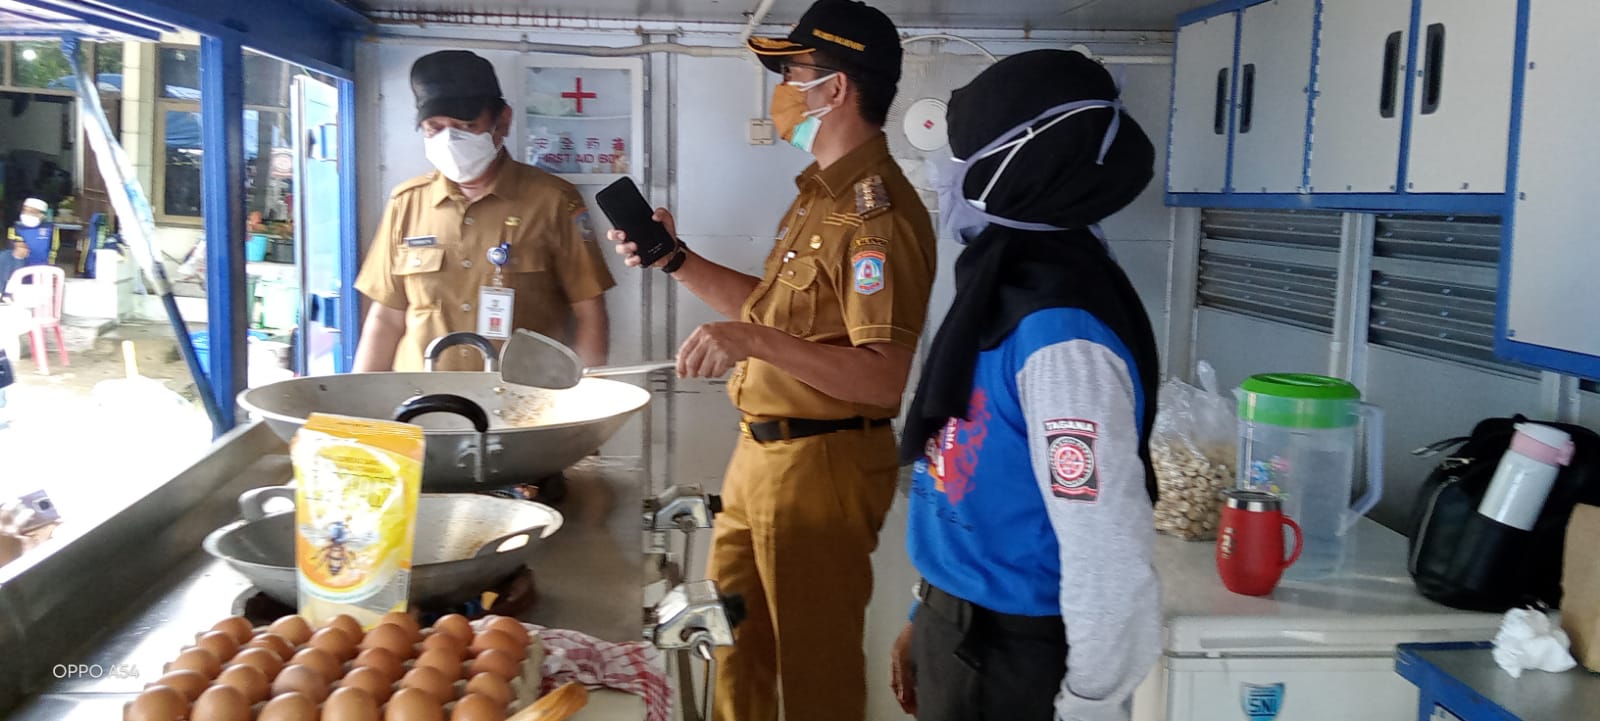 Wali Kota Balikpapan Rahmad Mas'ud menyempatkan diri membantu menggoreng telor di Dapur Umum yang didirikan Pemkot pada Senin (19/7/2021)